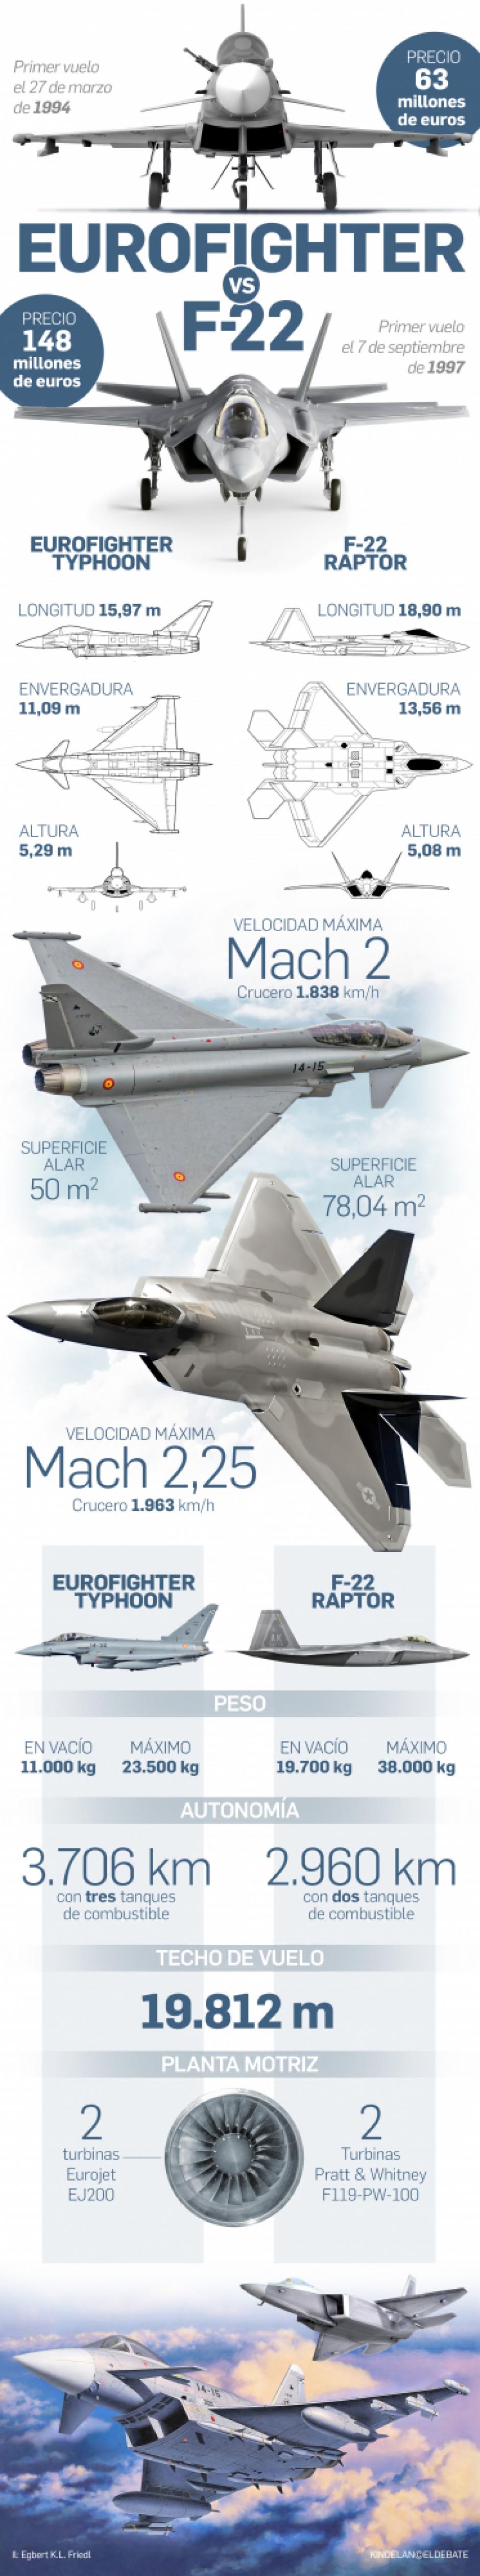 Eurofighter contra F-22